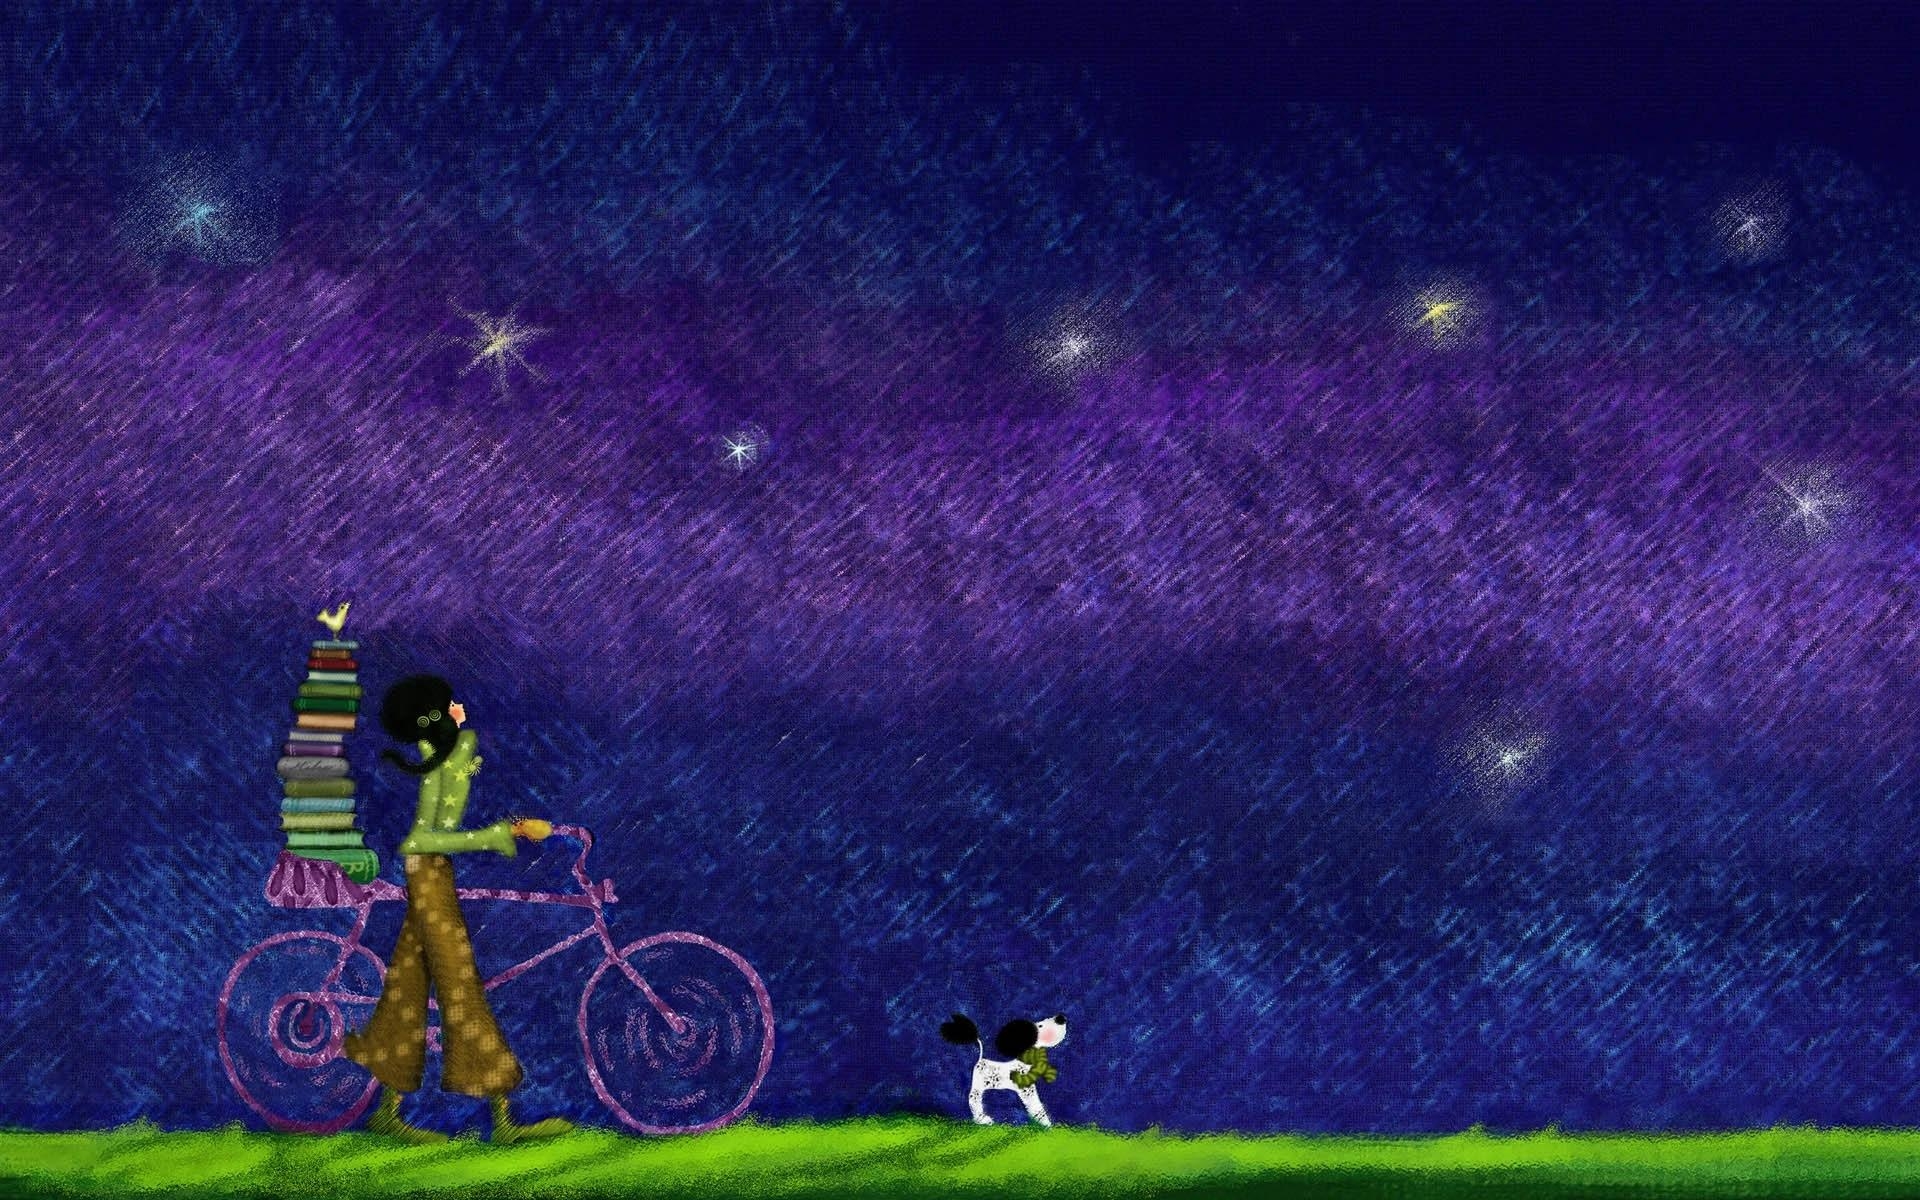 Картинки Девушка, велосипед, книги, собака, трава, небо, вечер фото и обои на рабочий стол